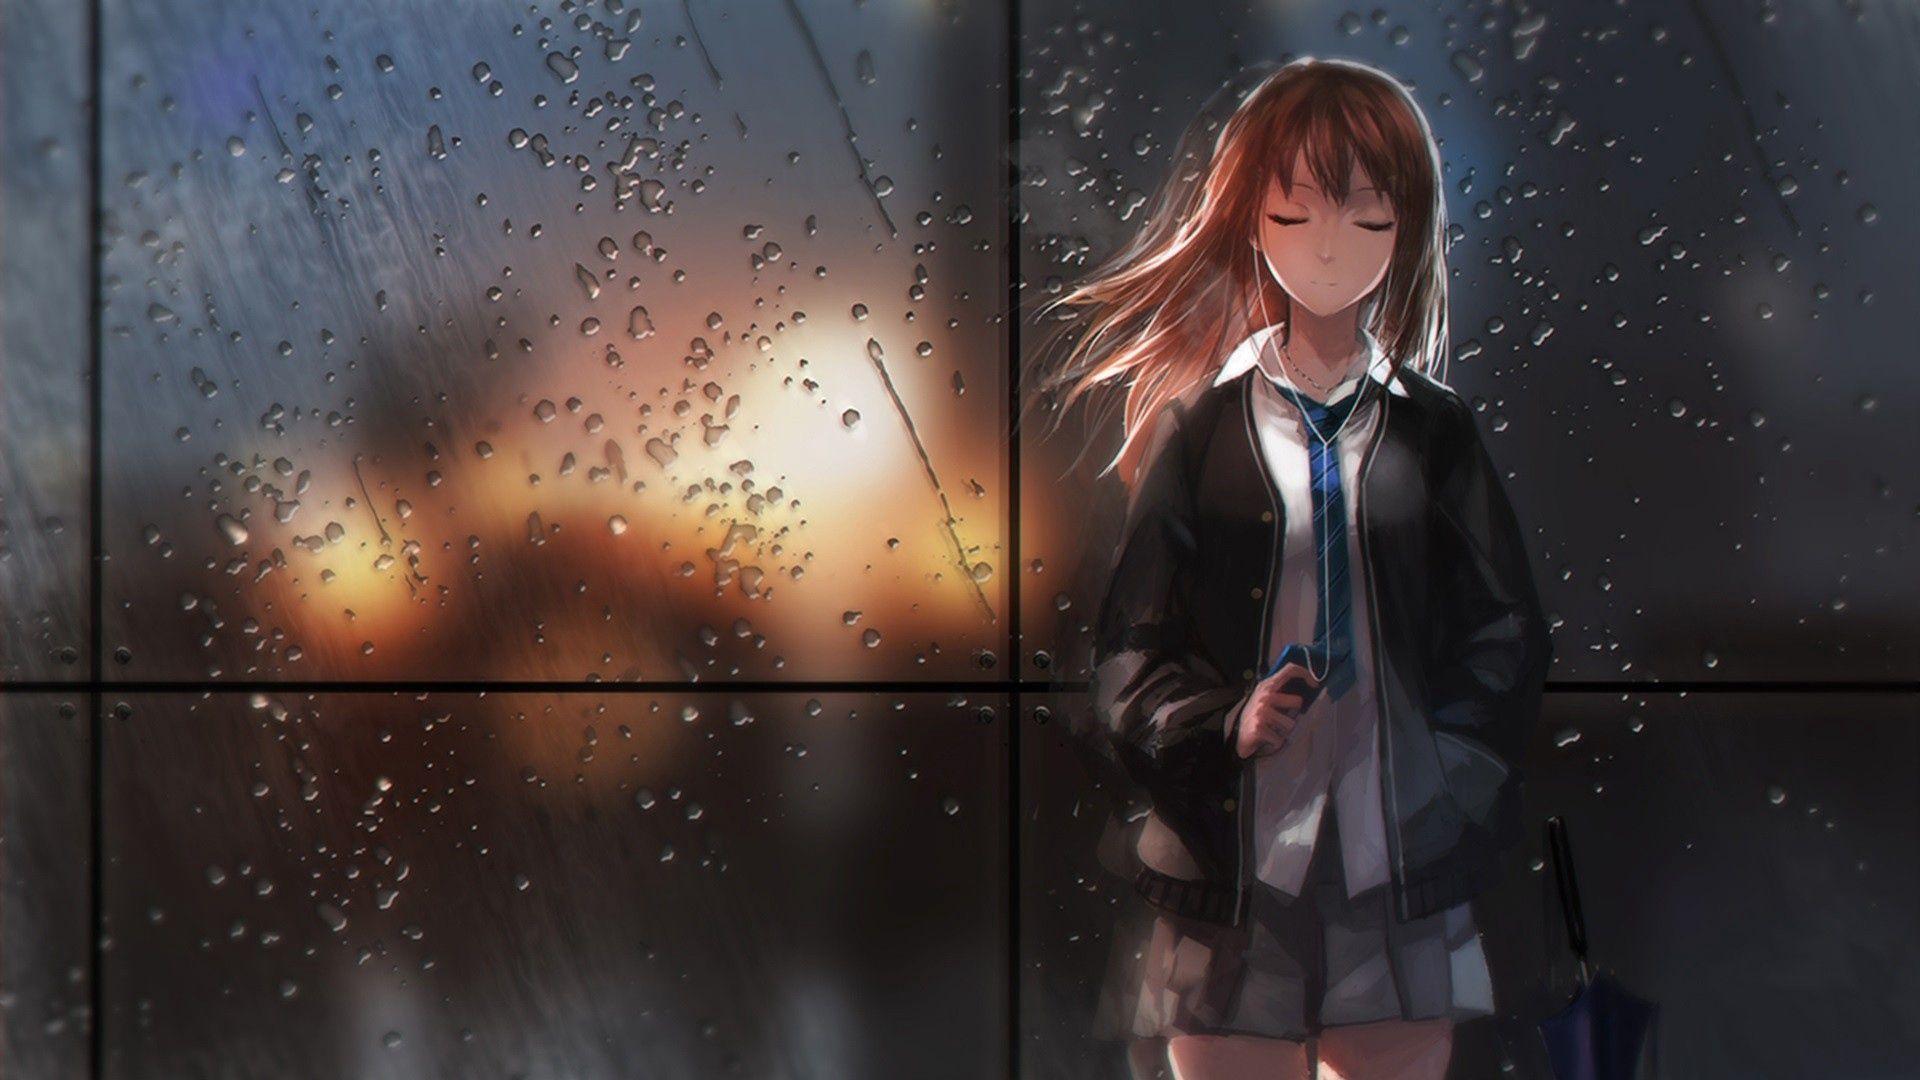 二次元雨天系列少女图片 - 哔哩哔哩